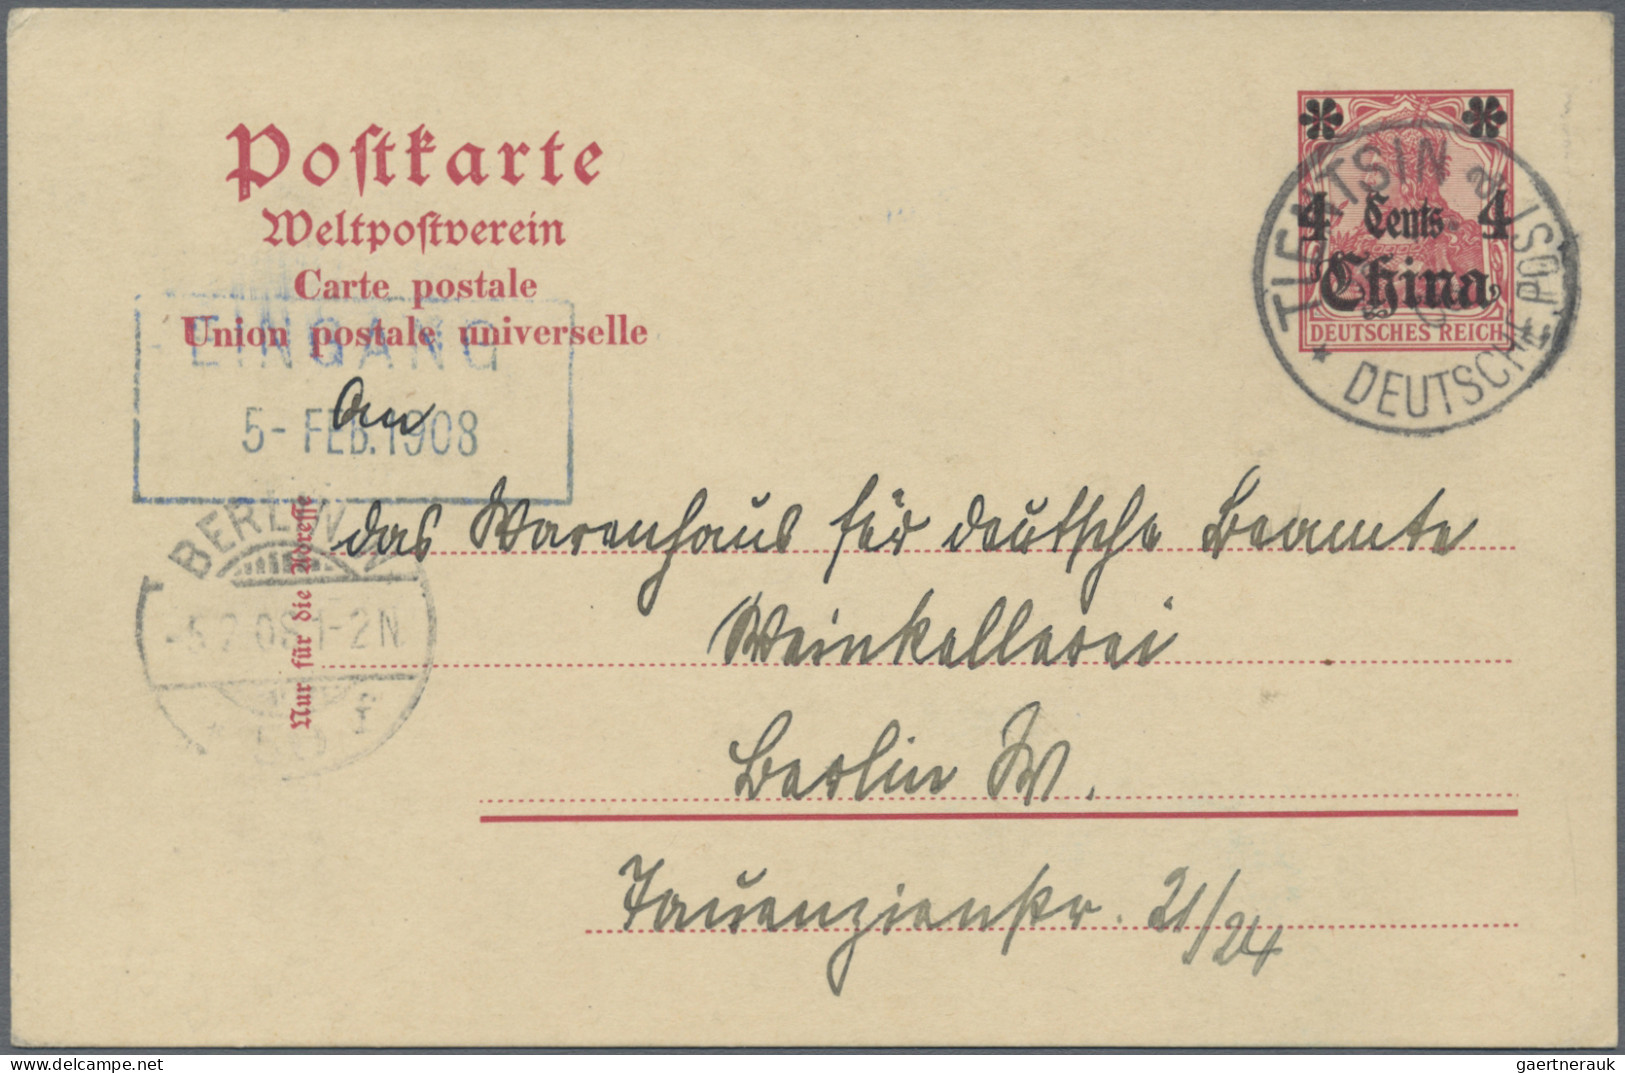 Deutsche Post in China - Ganzsachen: 1899/1914, saubere Partie von 18 gebrauchte